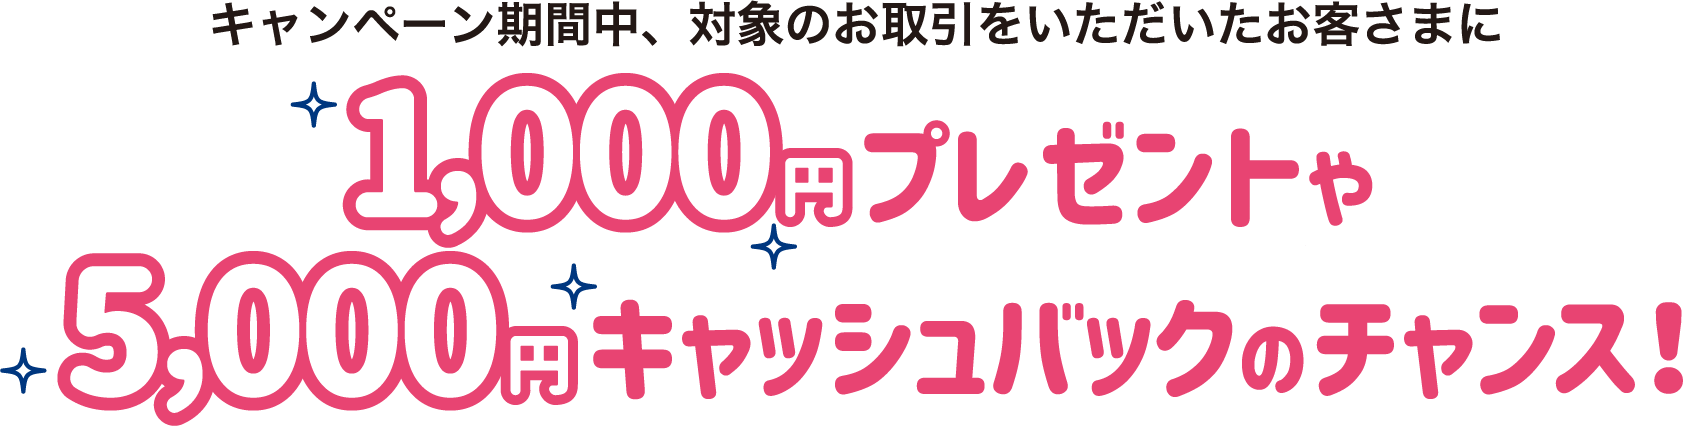 キャンペーン期間中、対象のお取引をいただいたお客さまに1000円プレゼントや5000円キャッシュバックのチャンス!